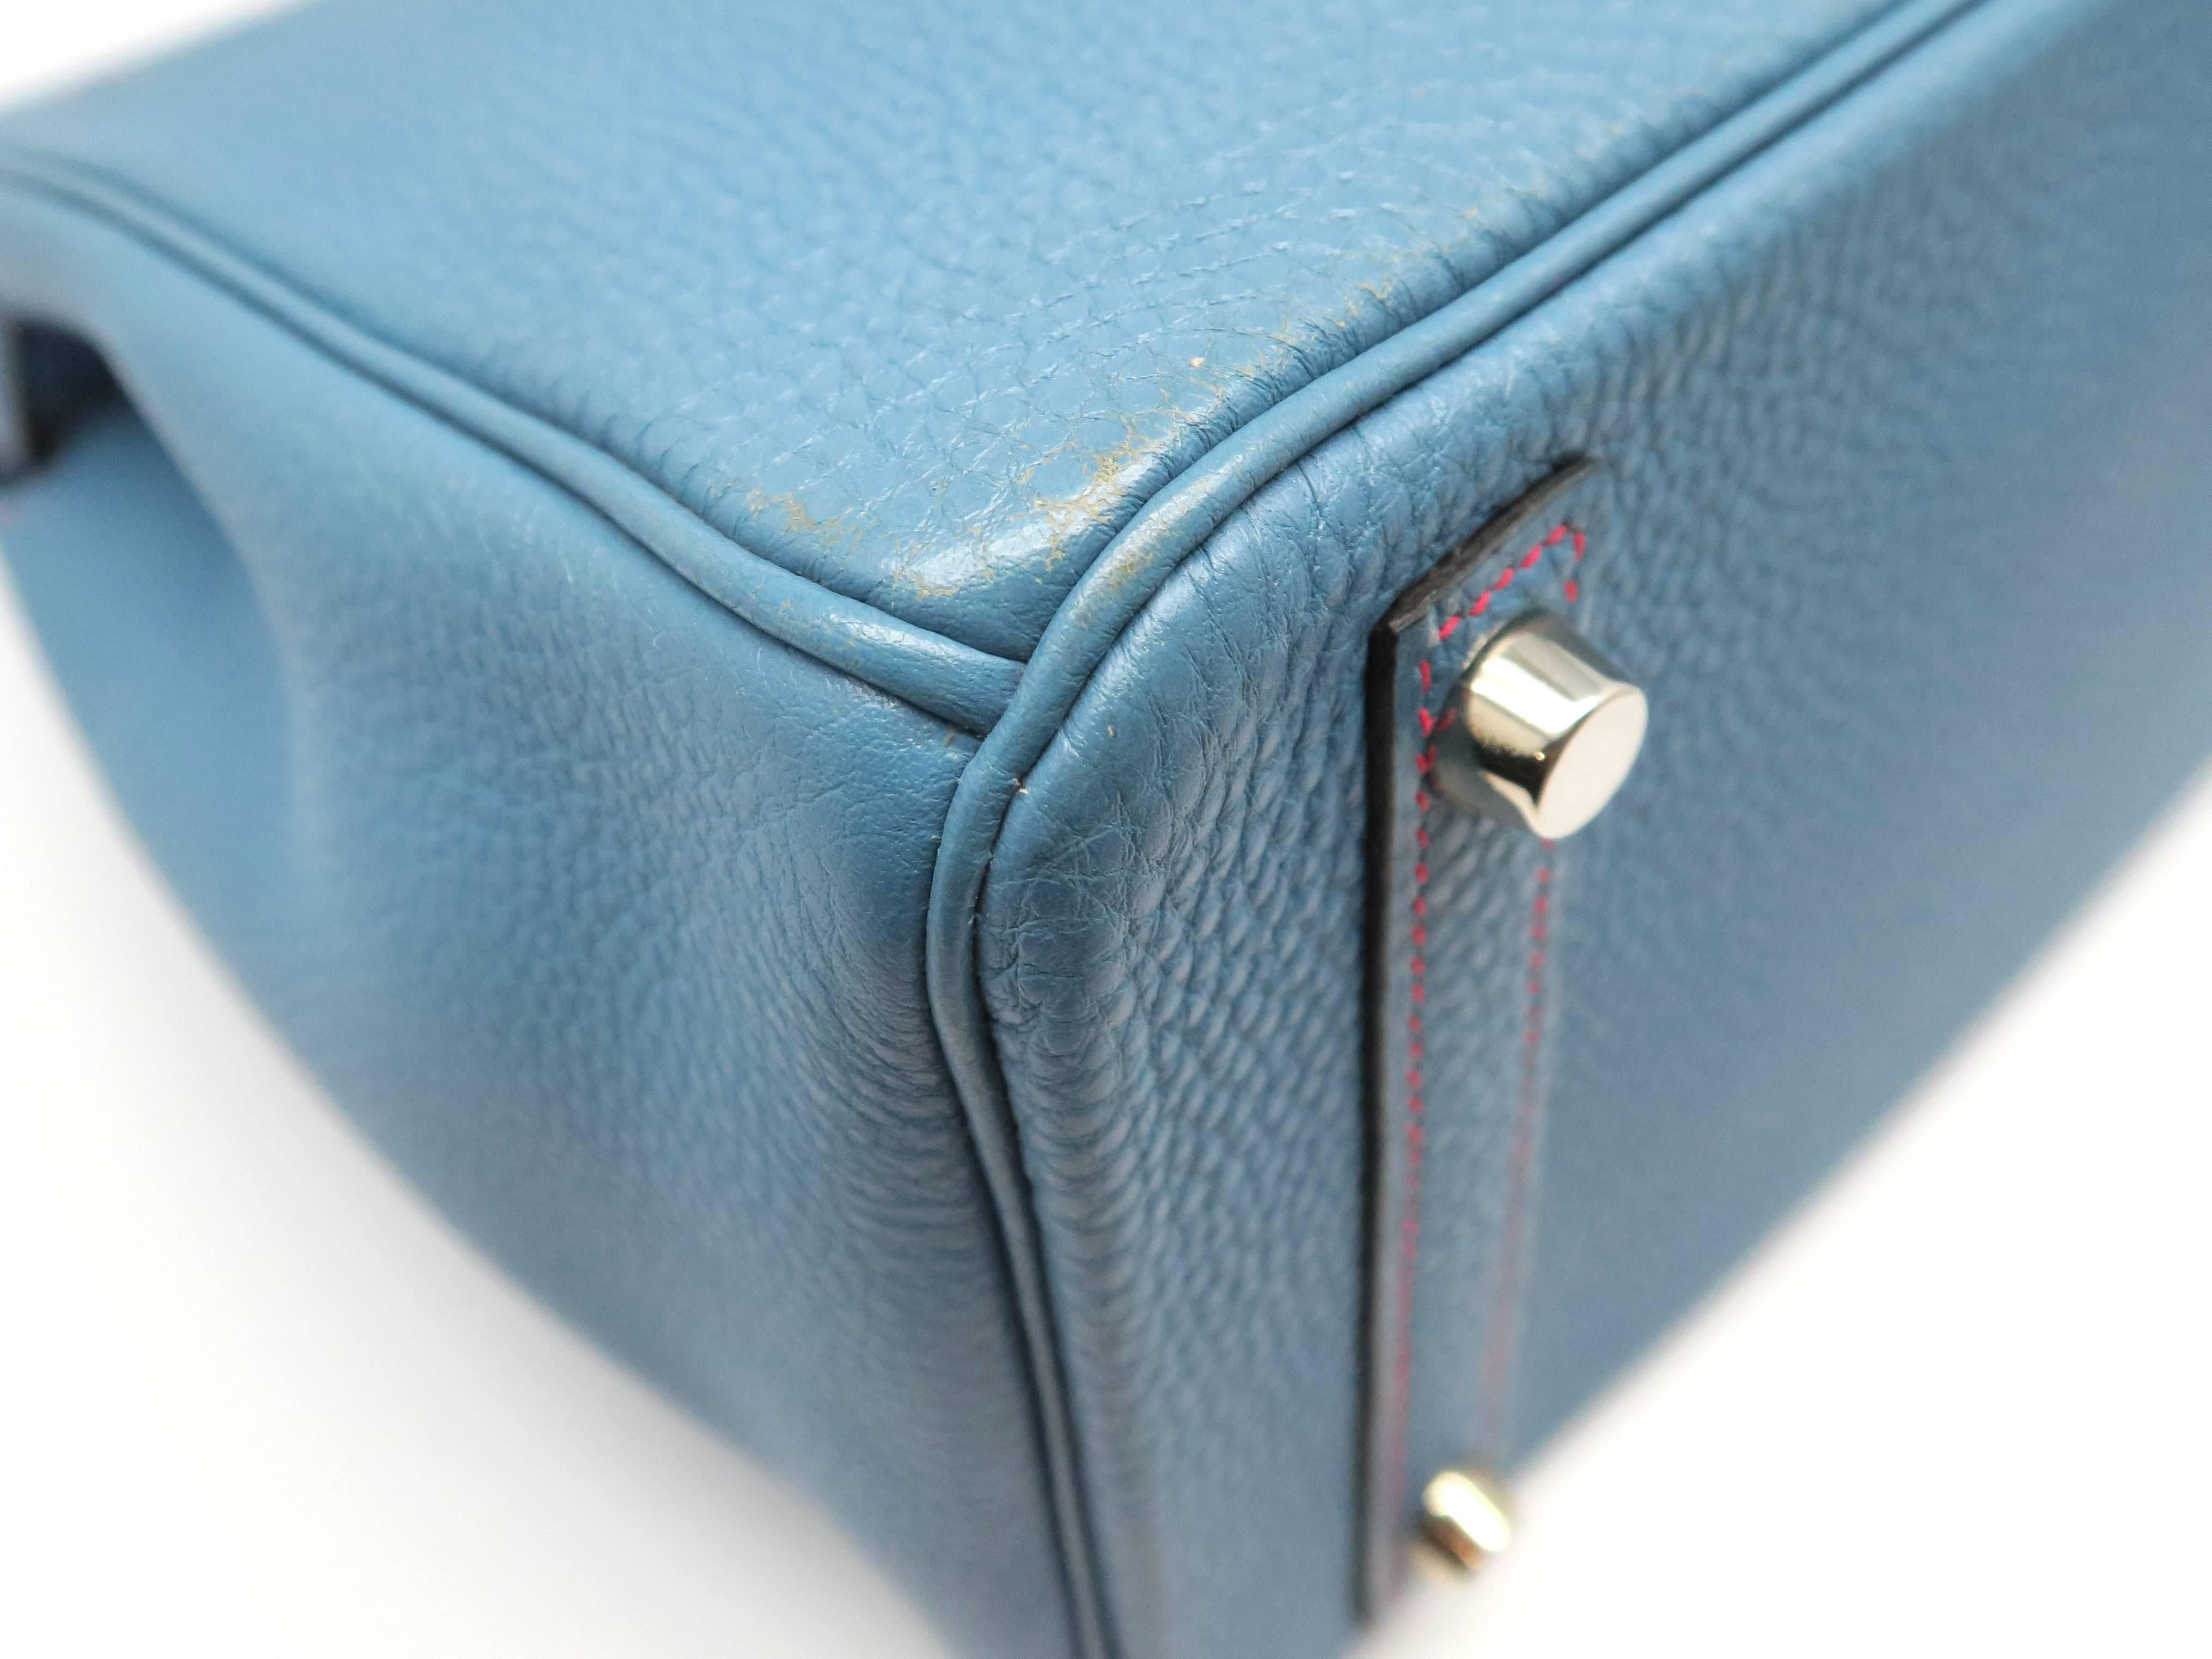 Hermes Birkin 30 Bleu Jean Blue Togo Leather SHW Top Handle Bag 2